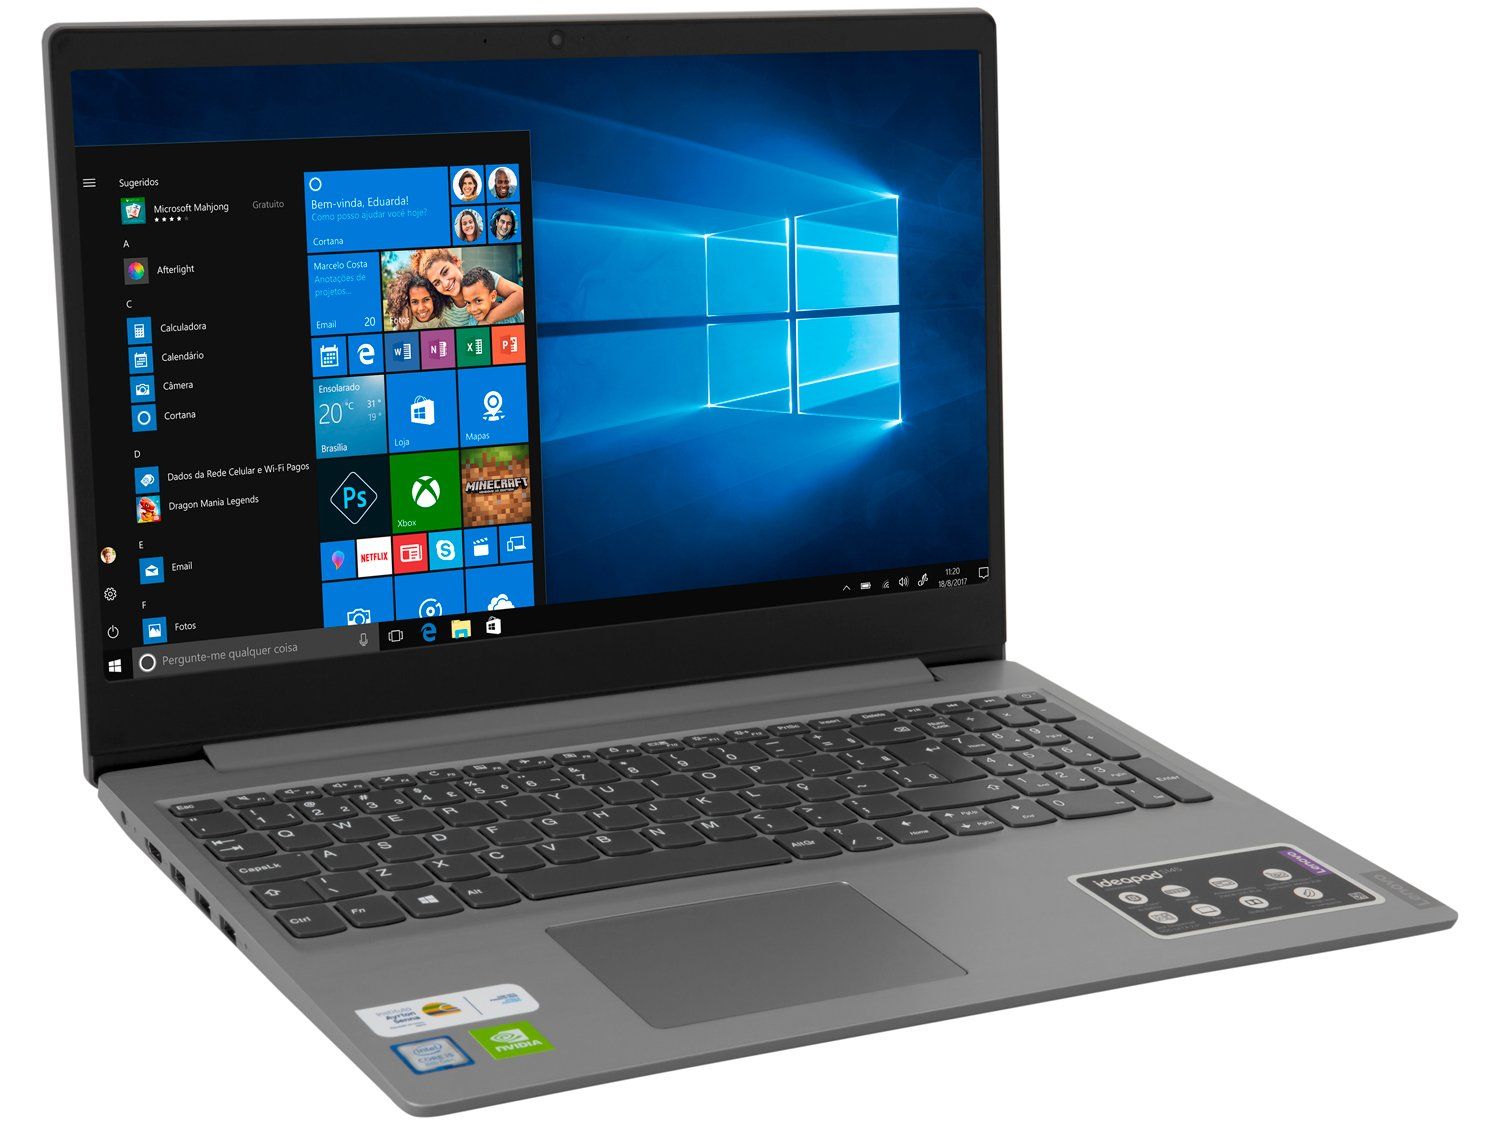 65a54294d424b Notebook Lenovo Ideapad S145: Ficha Técnica, Onde Comprar, Preço E Principais Informações